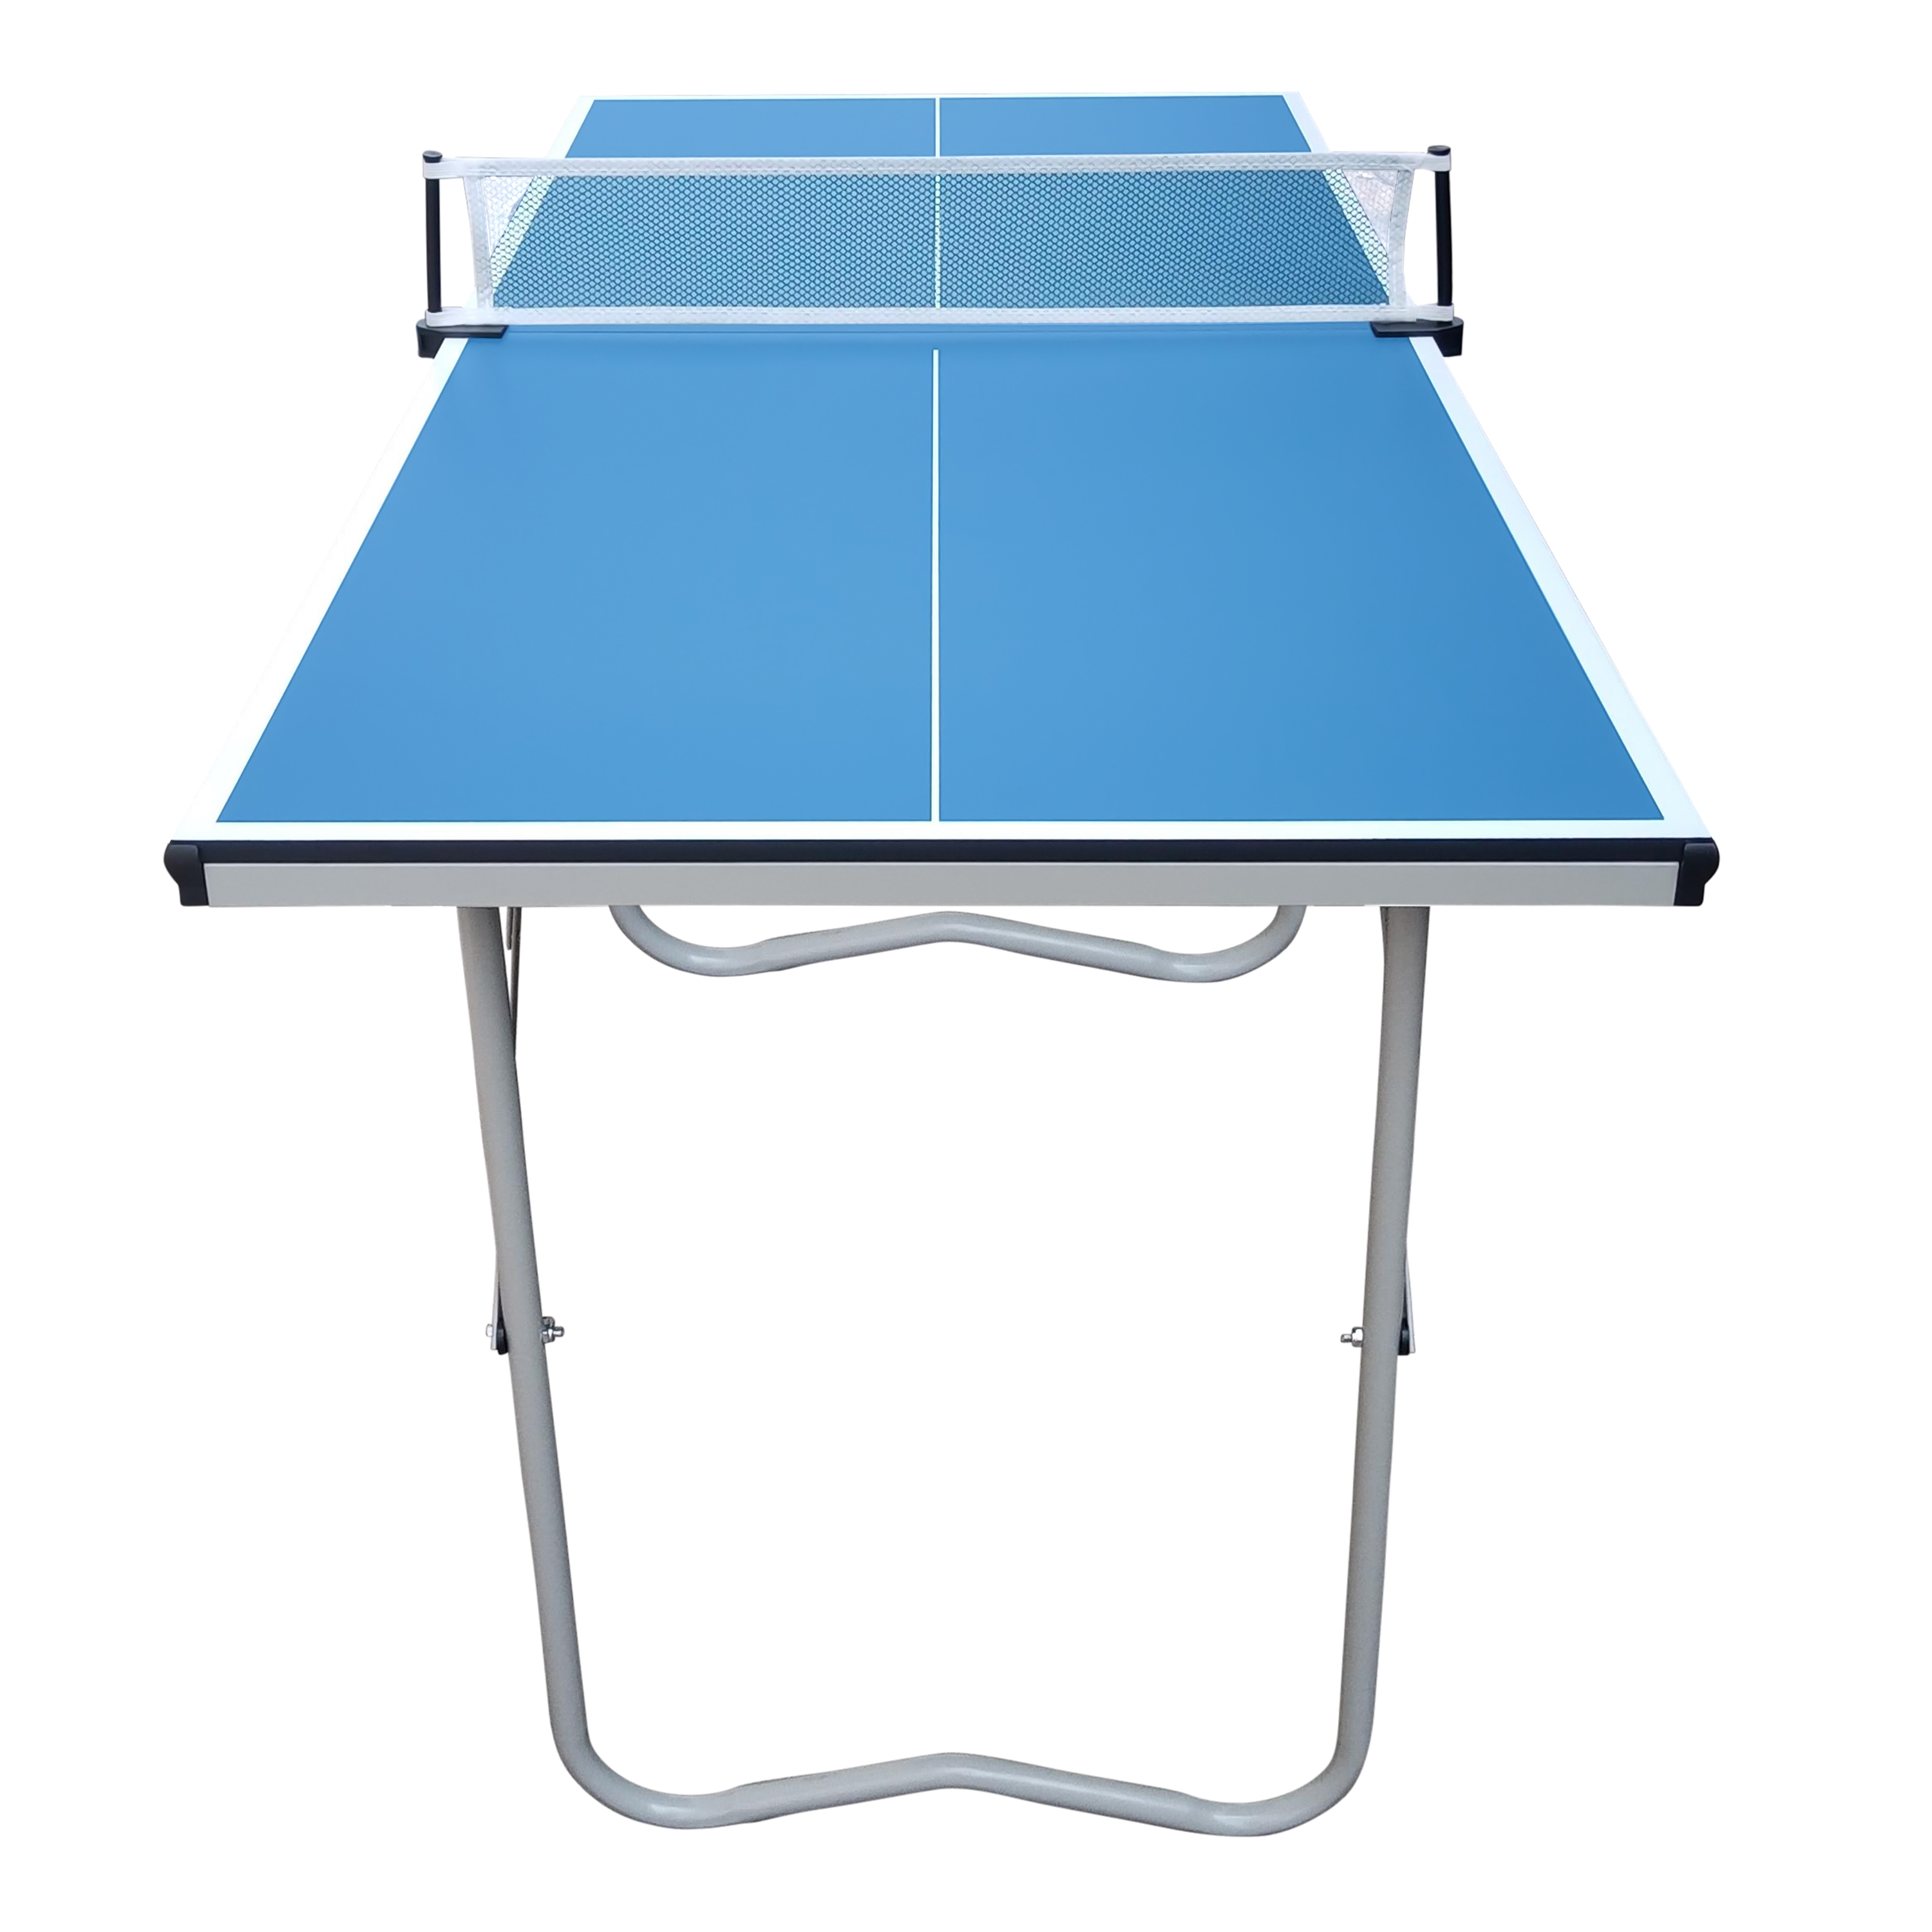 Cougar Tischtennisplatte Mini 1500 Basic tragbar Blau